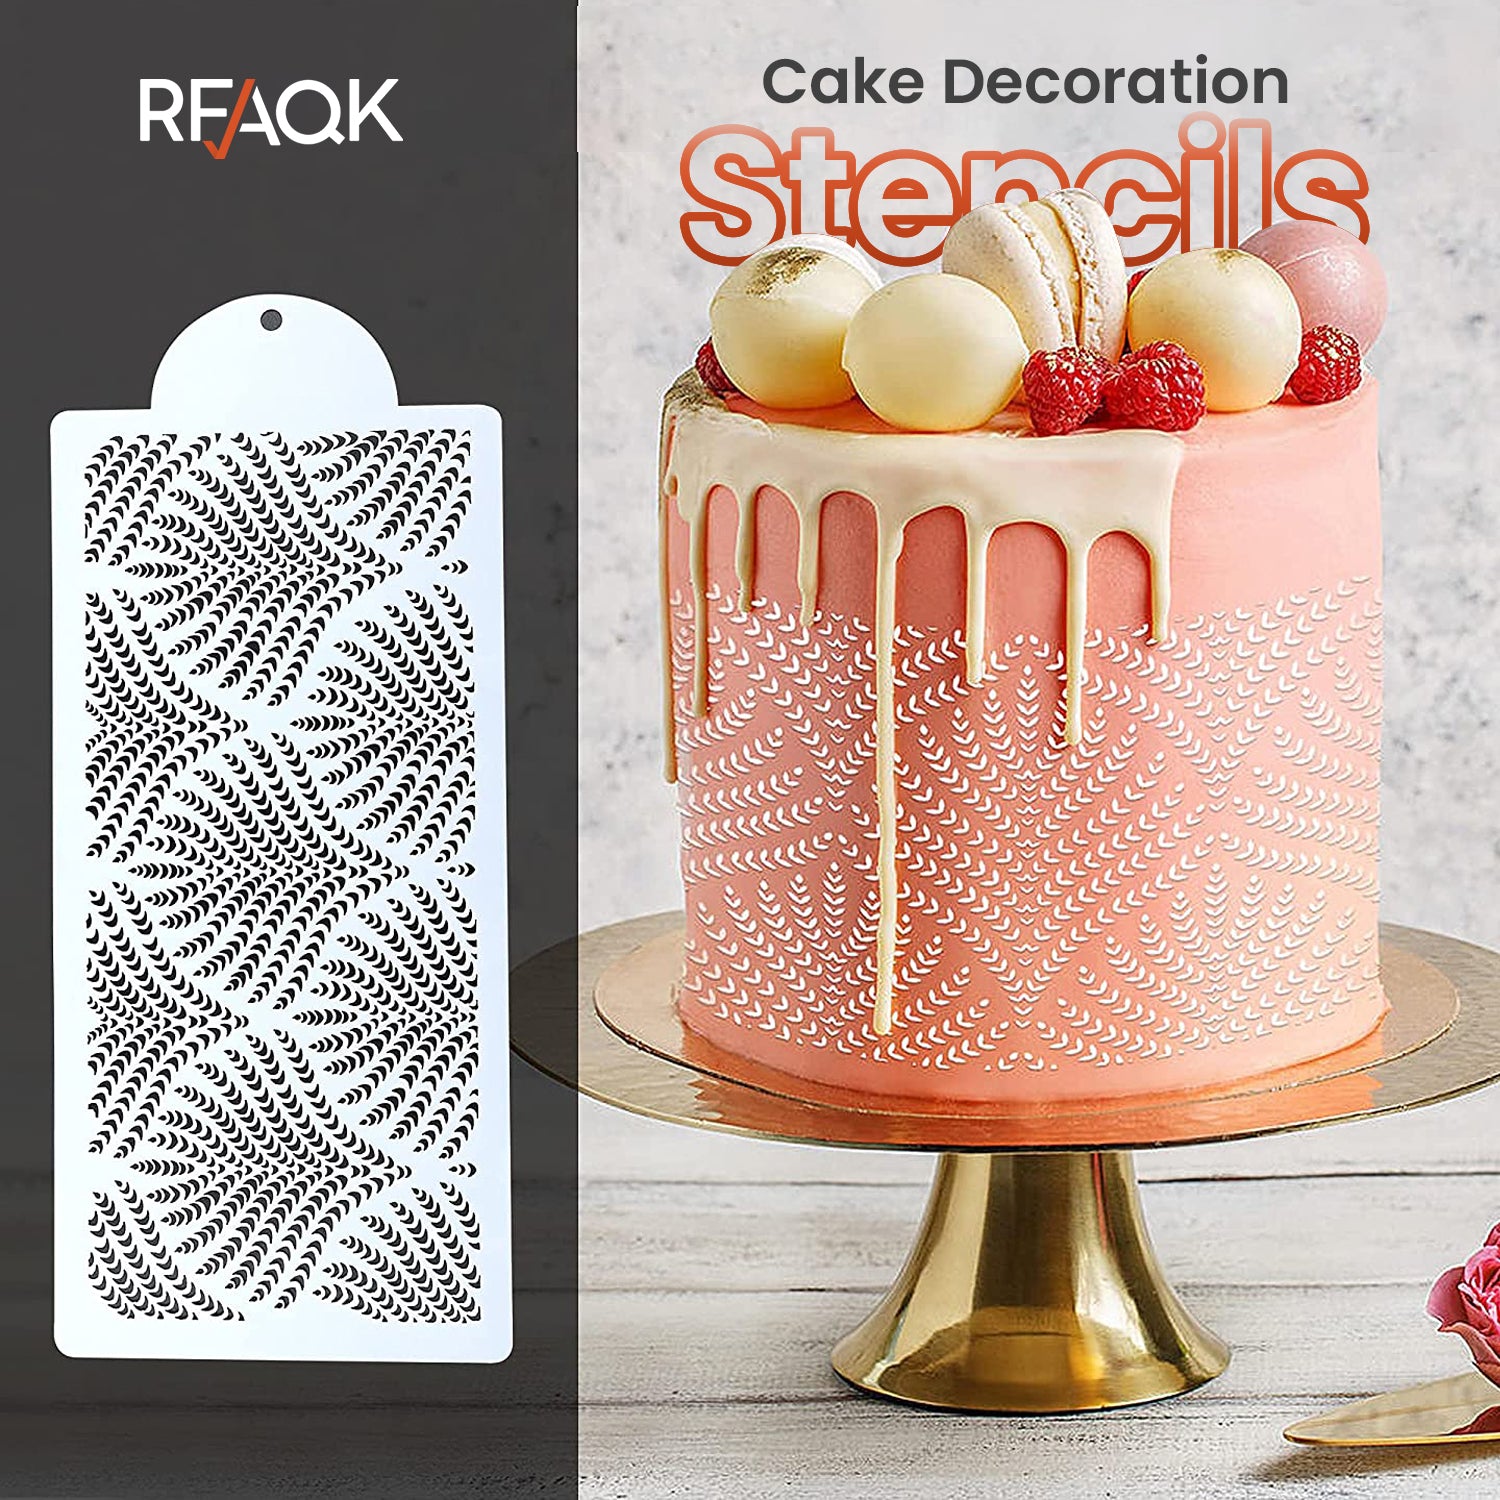 50-pcs Aluminum RFAQK Cake Decorating Kit - Order Now!